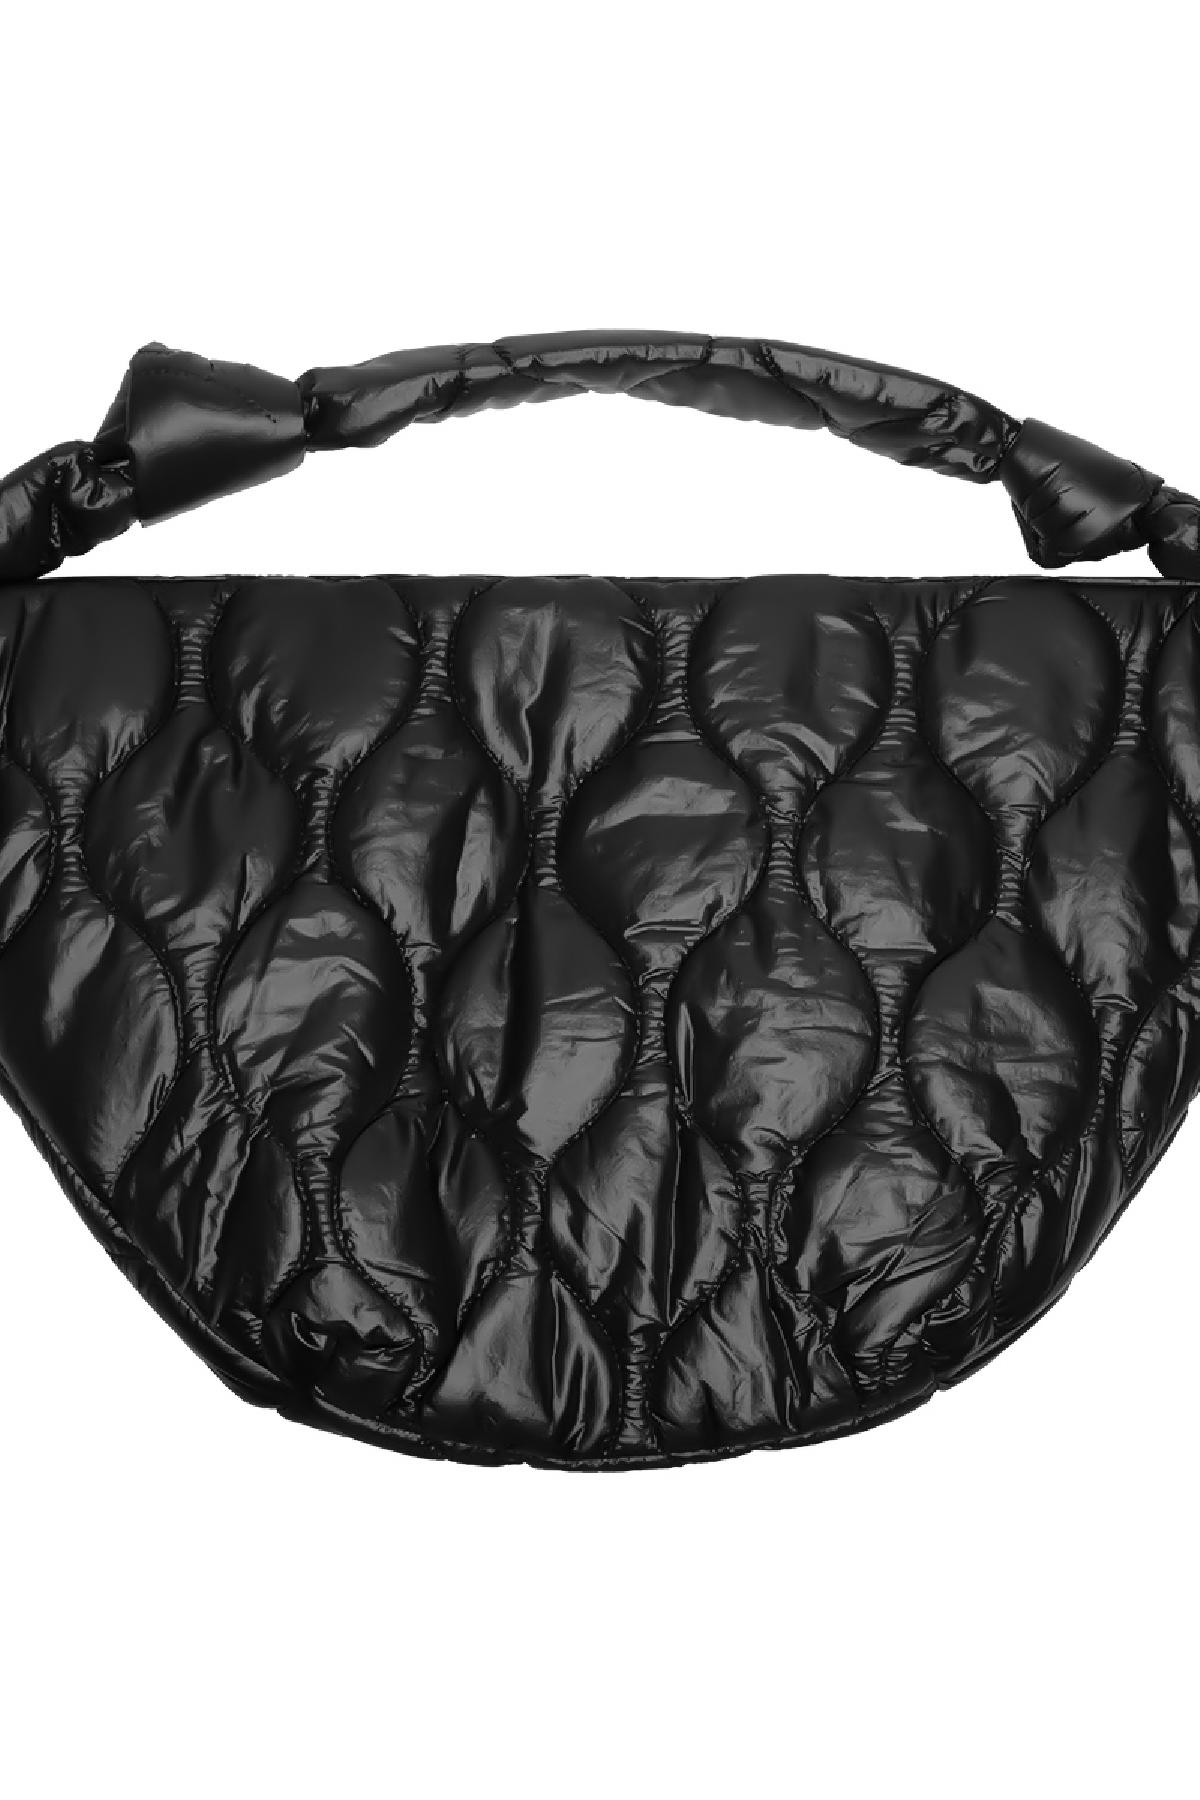 Padded shoulder bag Black Polyester Picture3